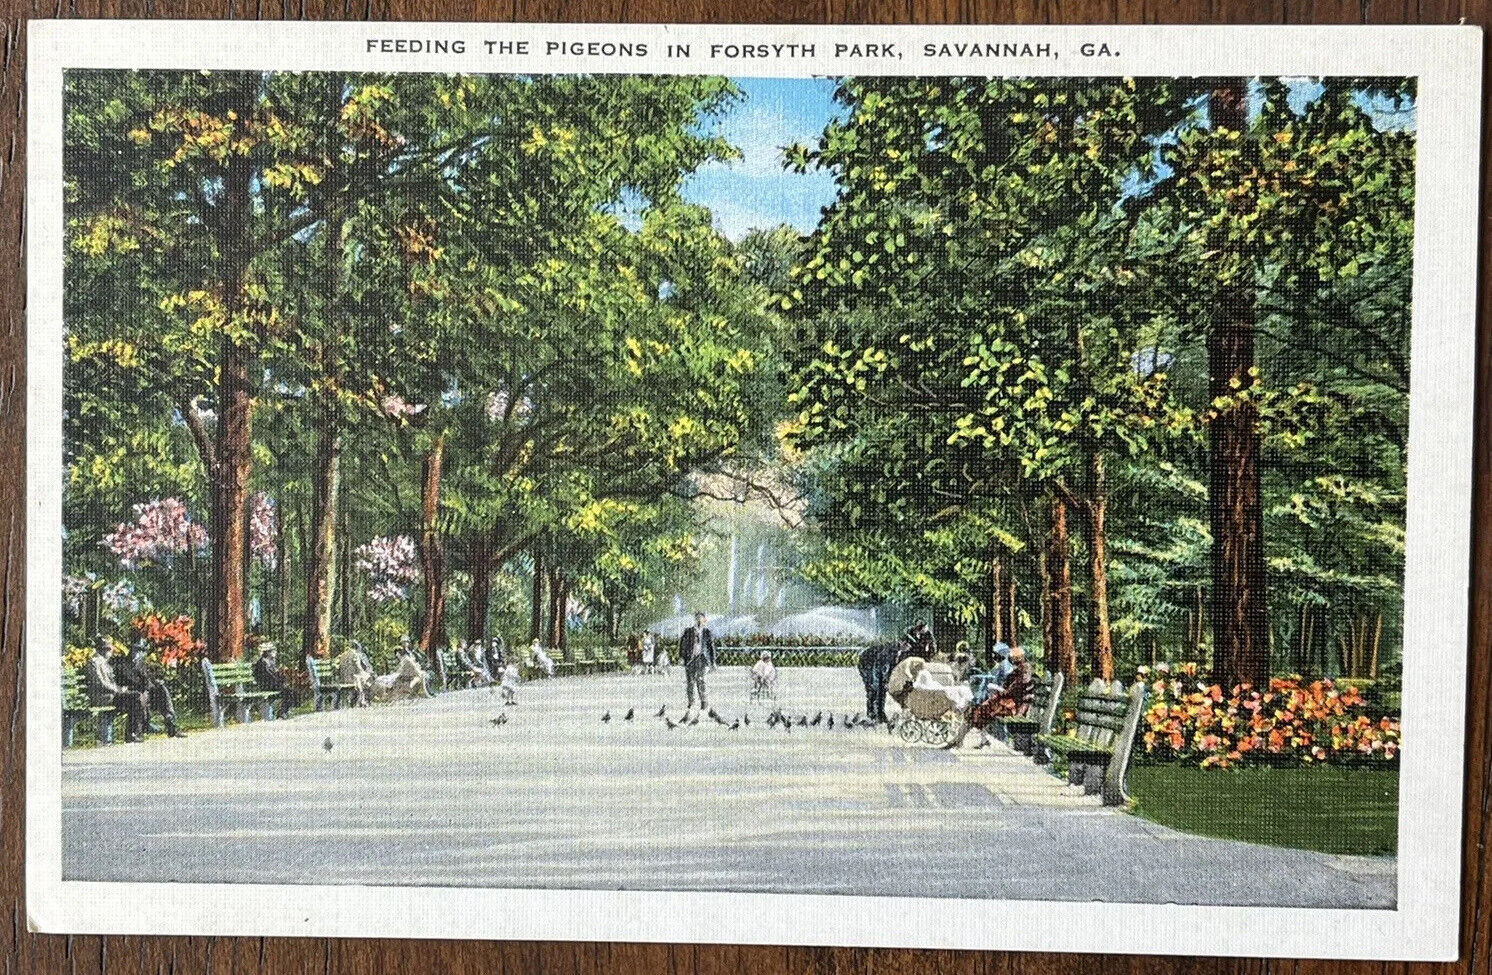 Savannah Georgia Forsyth Park People Feeding Pigeons Vintage Postcard c1920